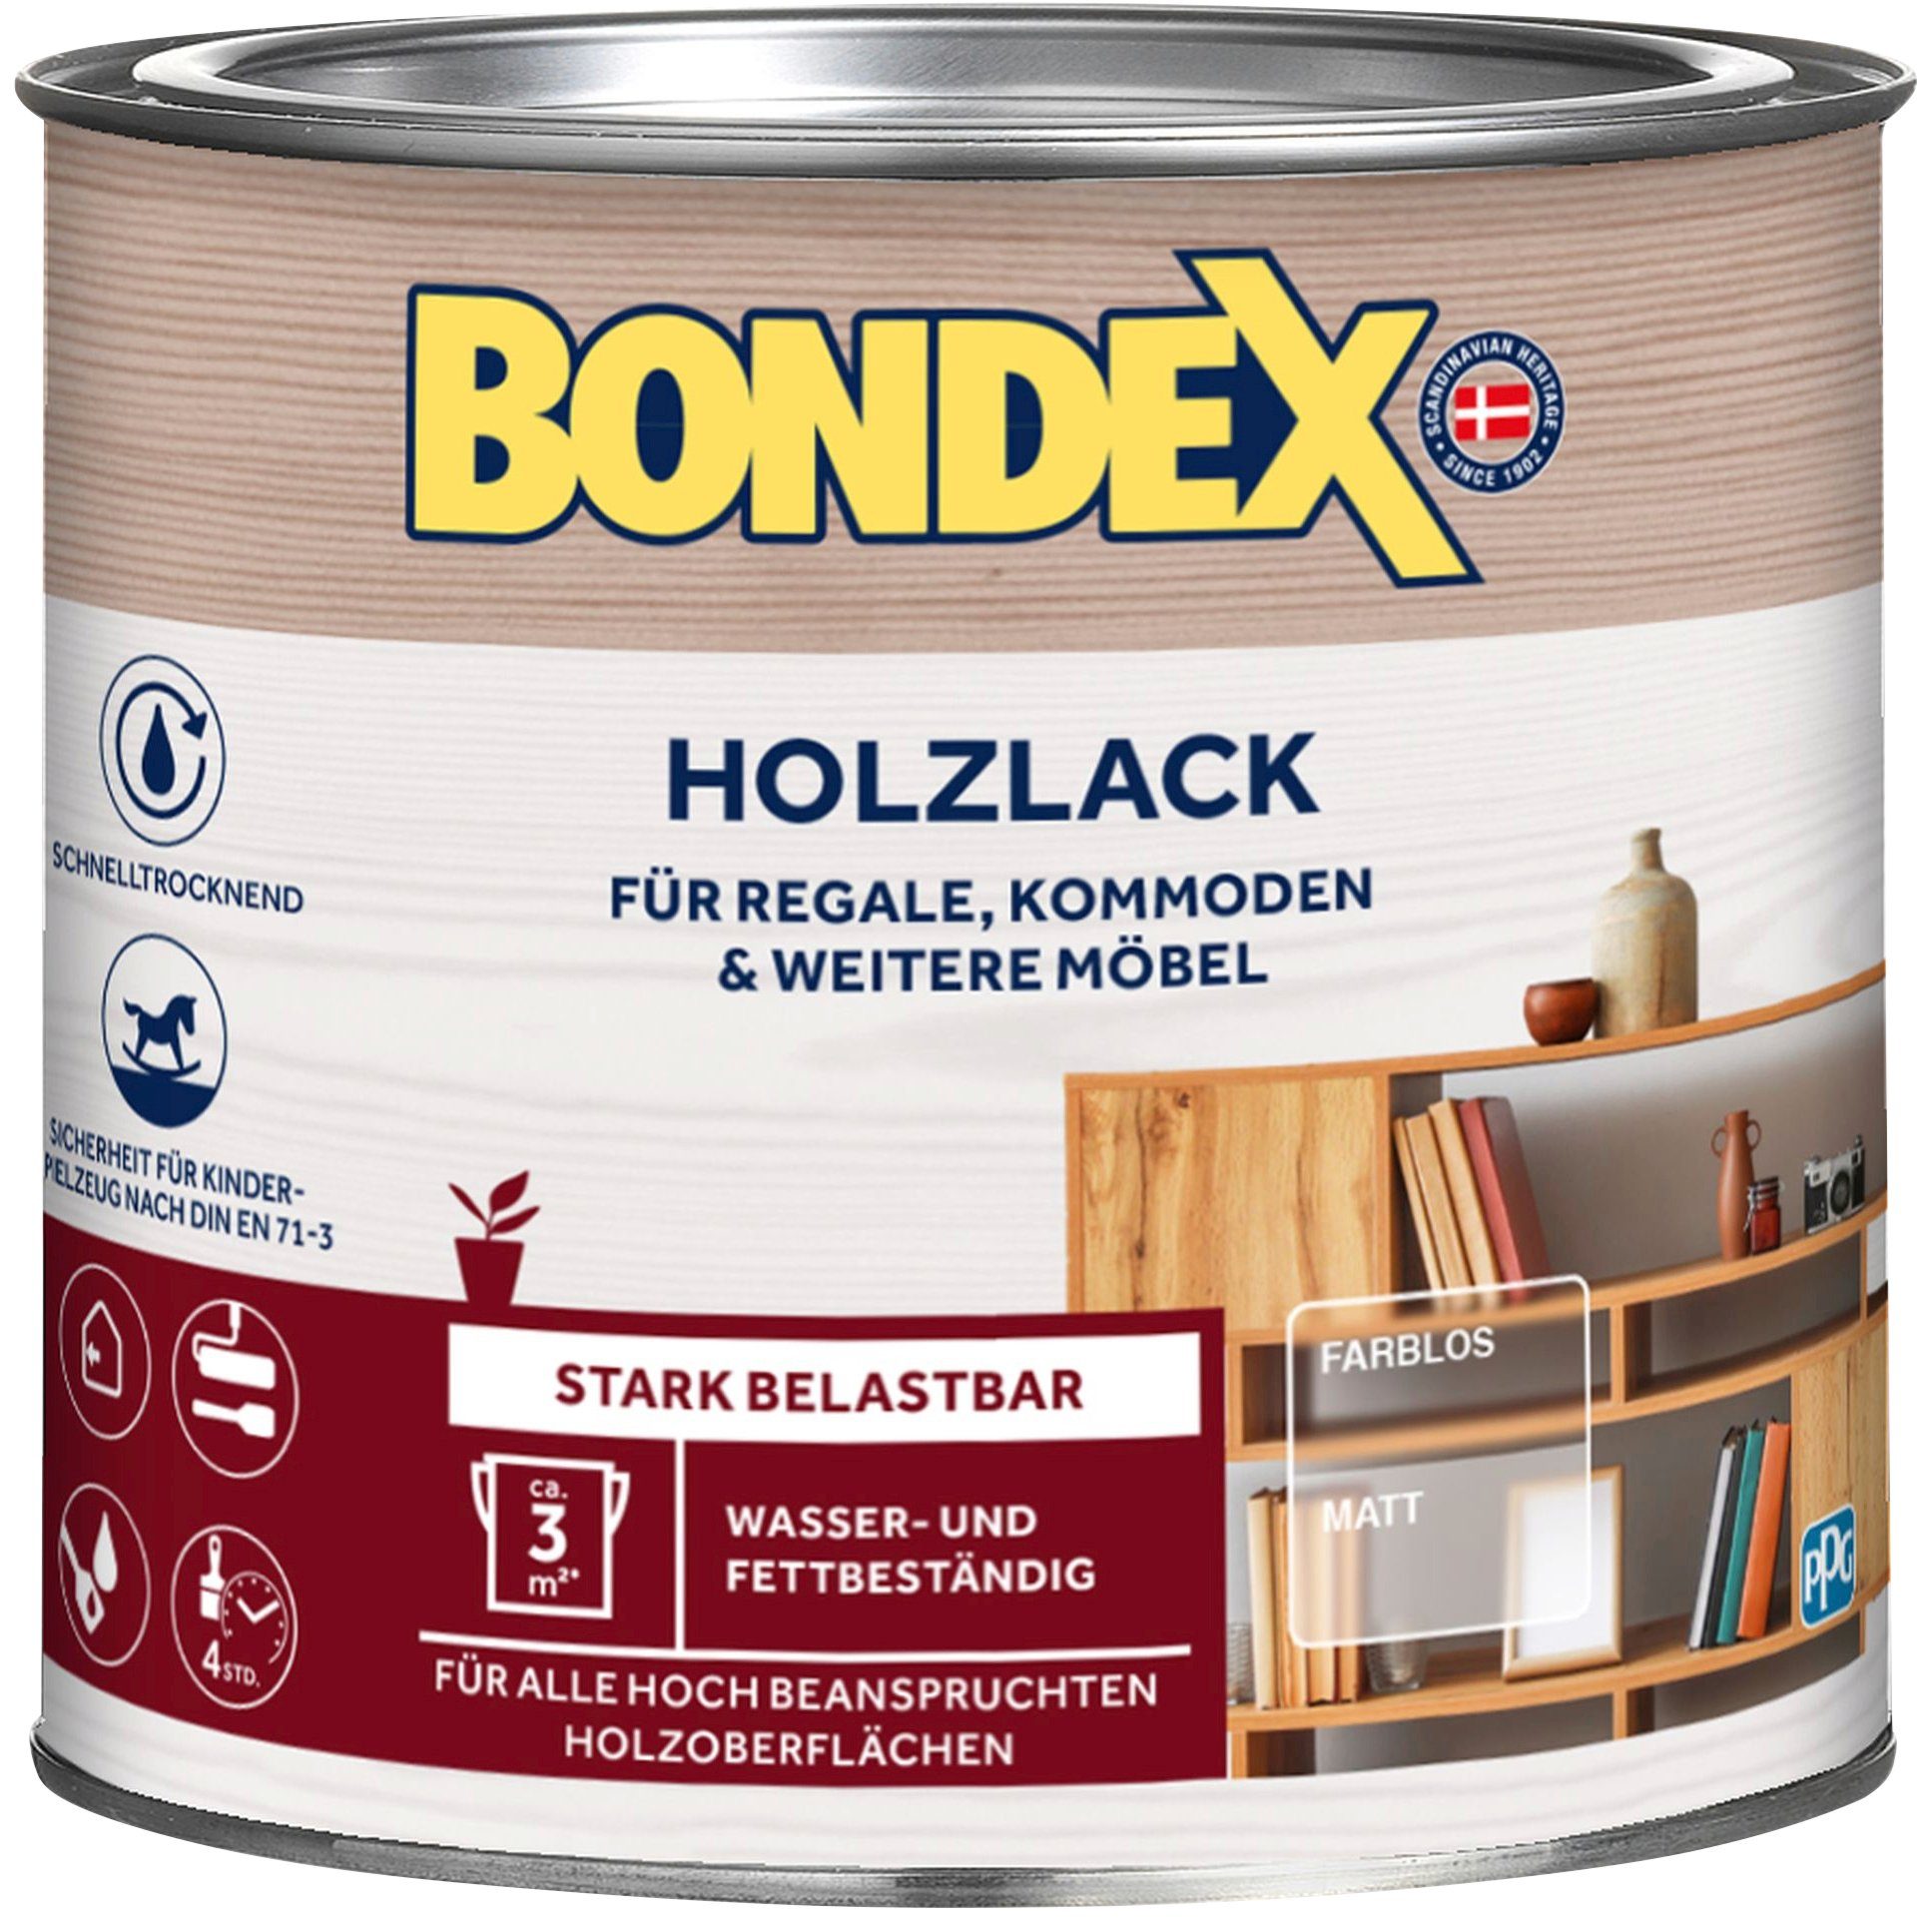 Bondex Holzlack HOLZLACK, Farblos / Matt